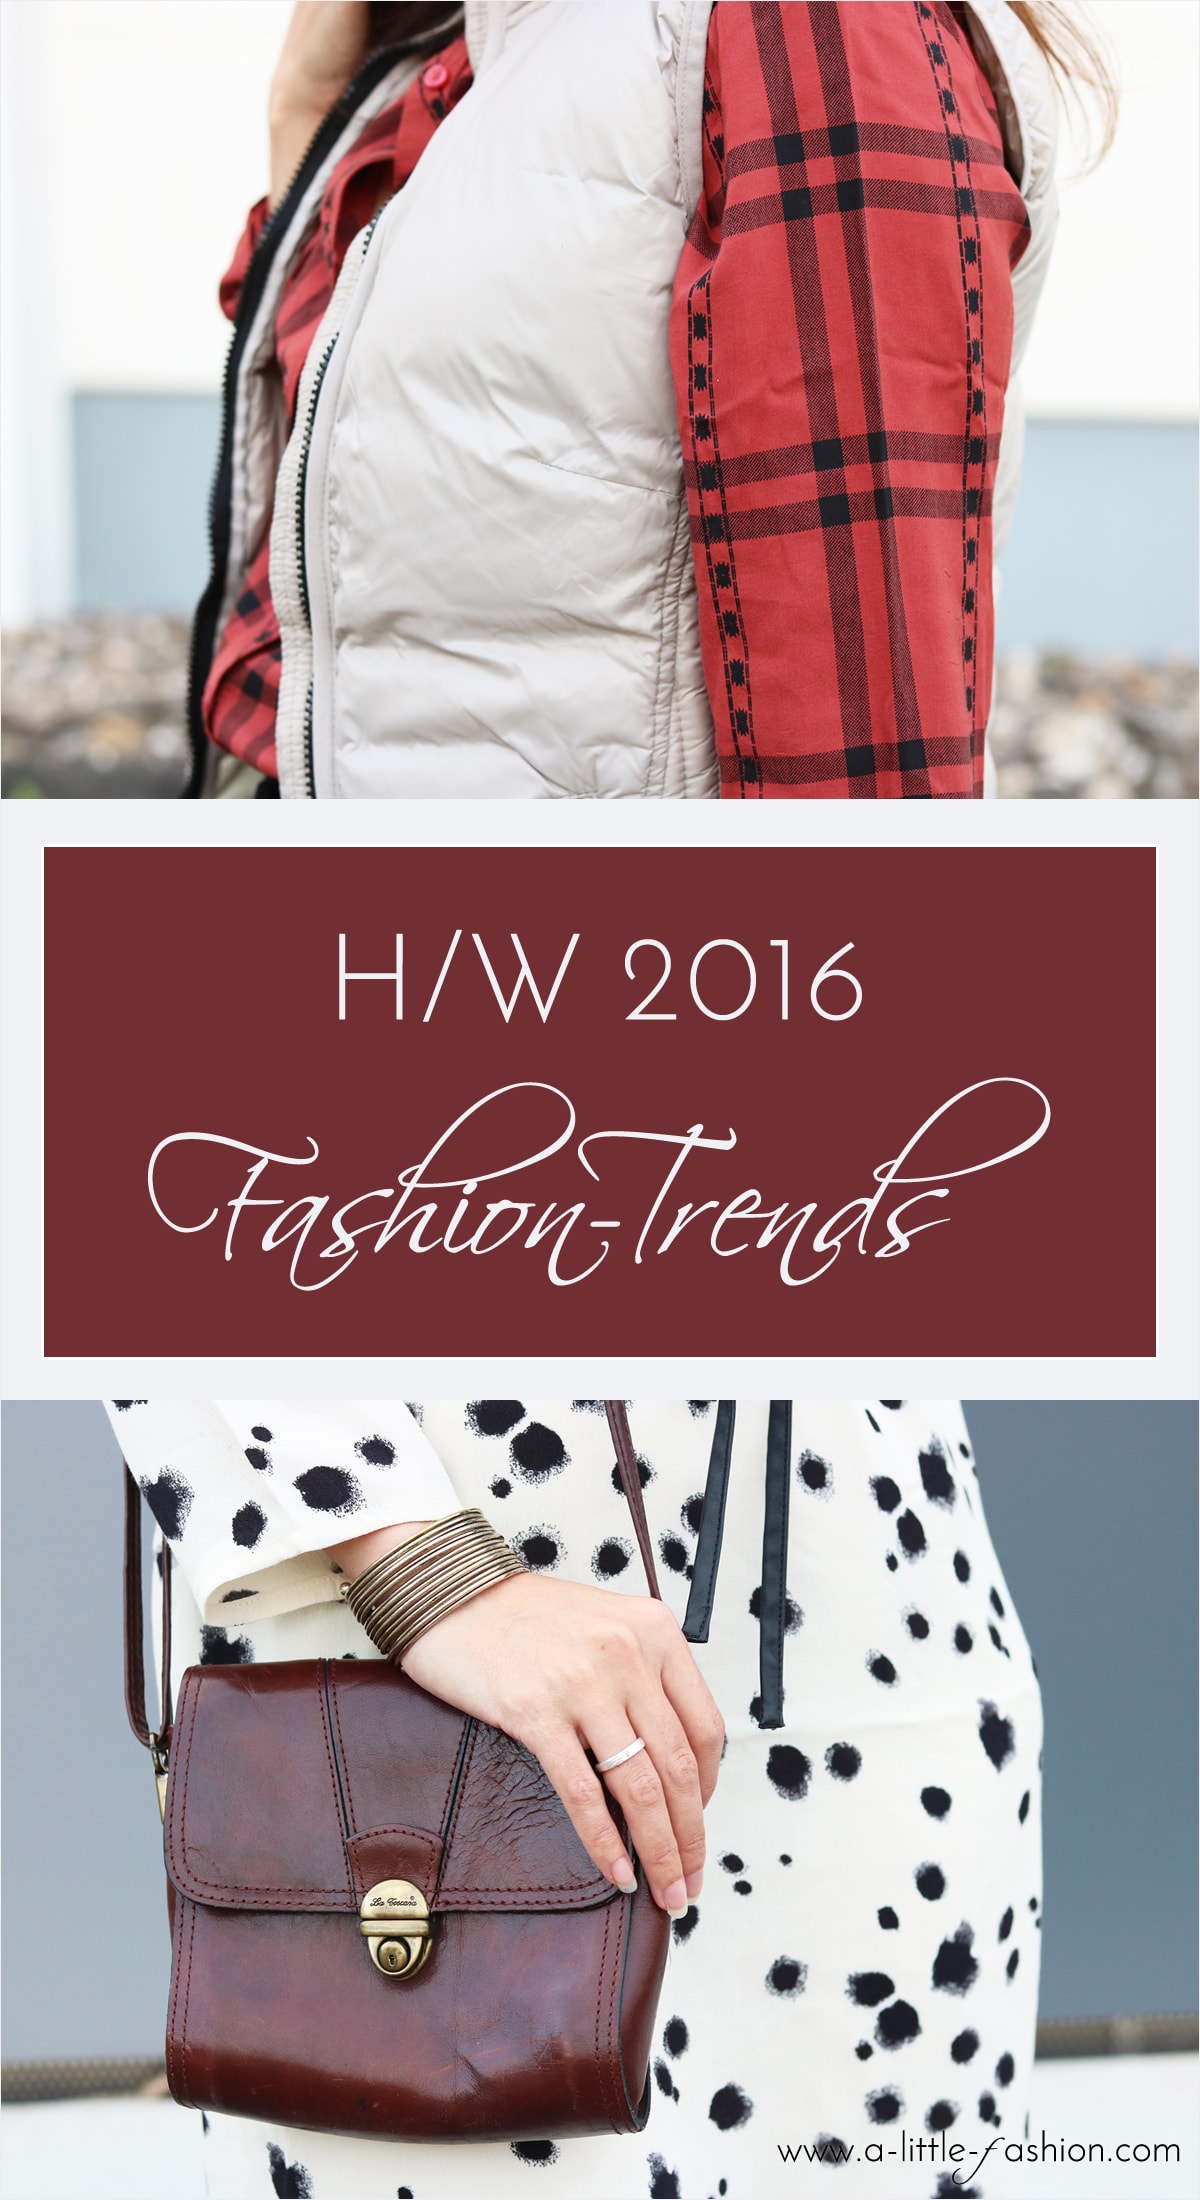 Herbst-Trends 2016 | Samt, Strick, Rot, Karo, Daunenjacken u.v.m. | A Litle Fashion